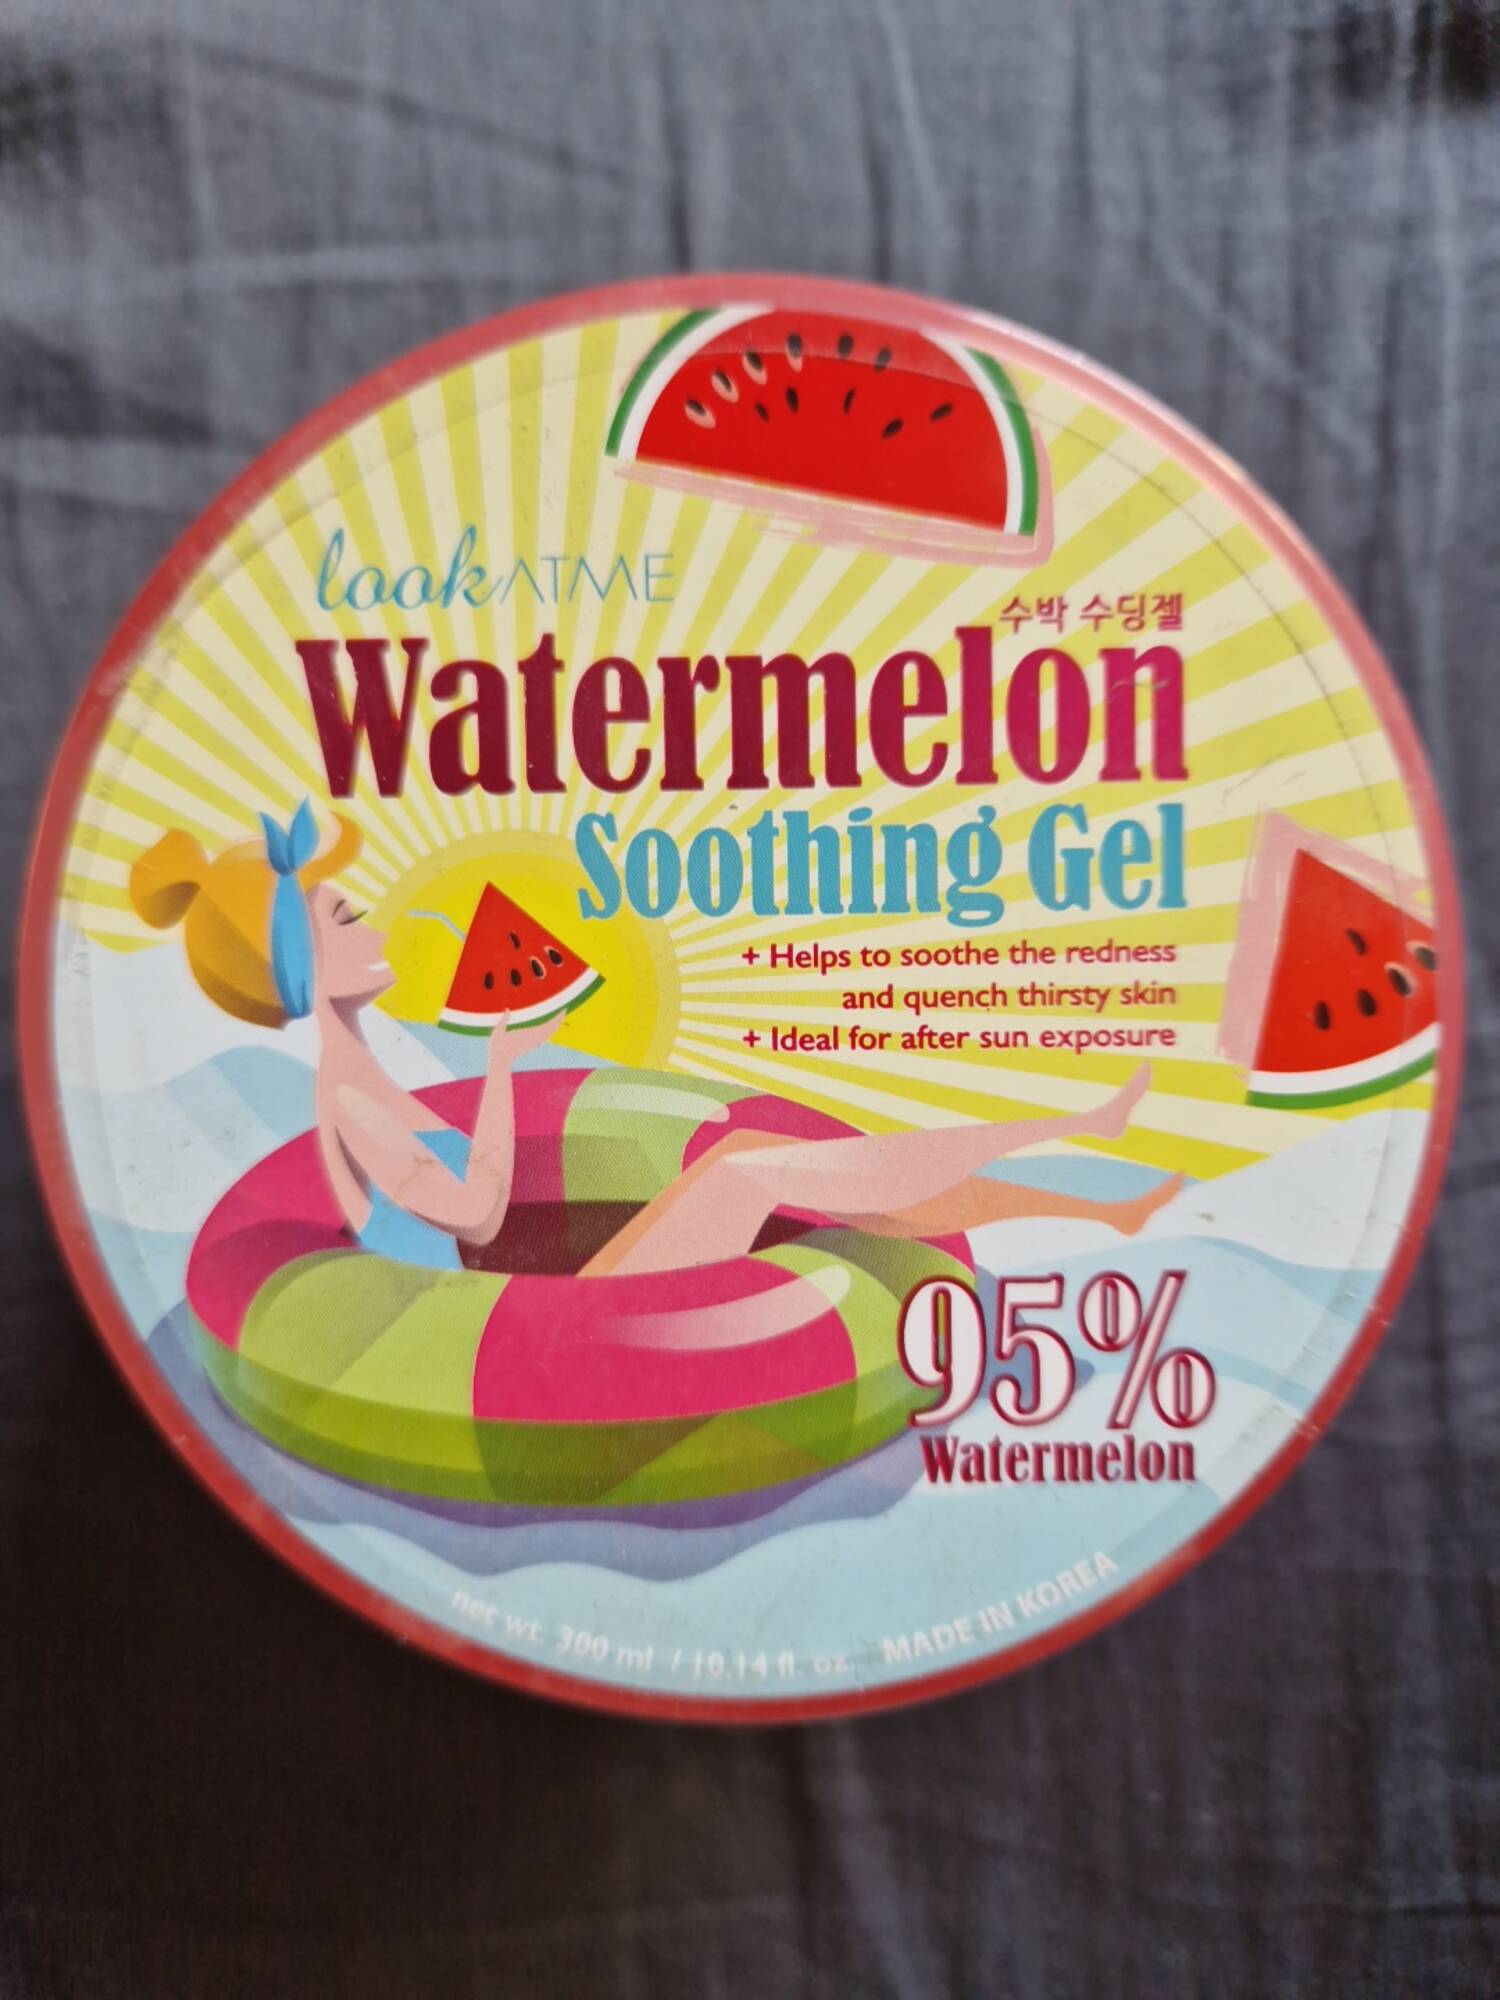 LOOK AT ME - Watermelon - Soothing gel